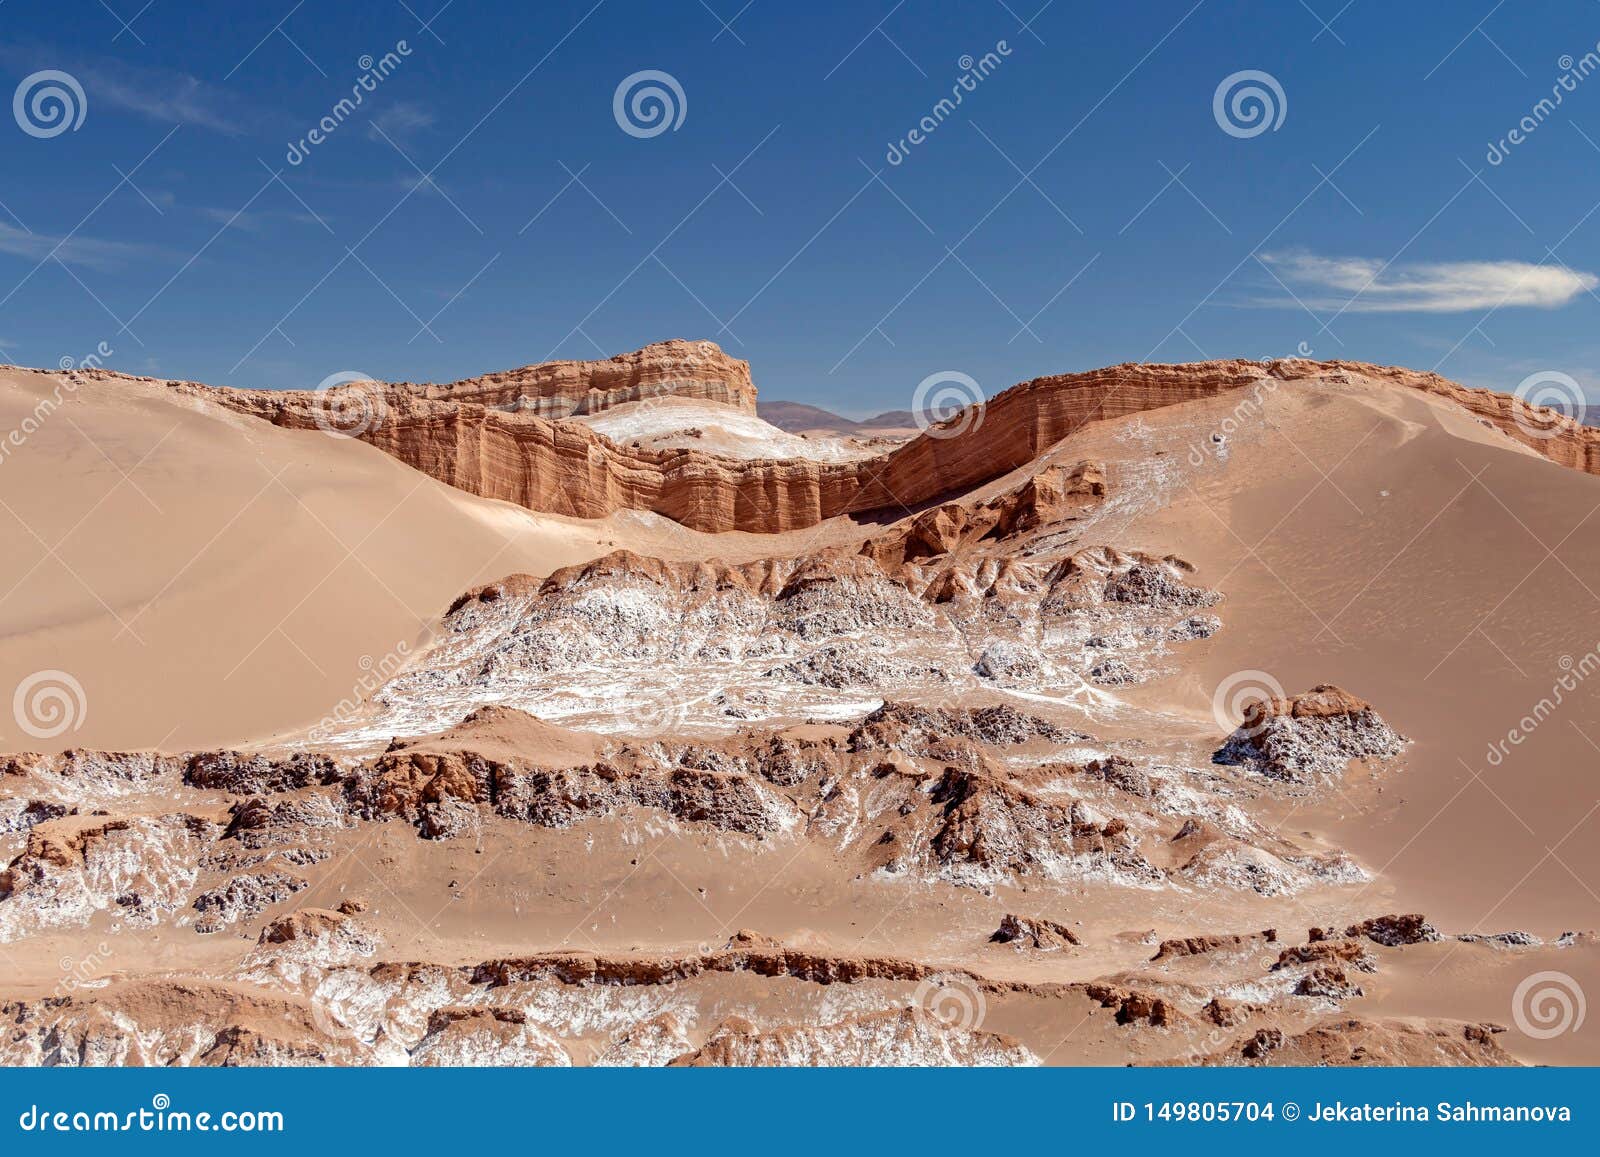 sand dunes in moon valley valle de la luna, atacama desert, chile